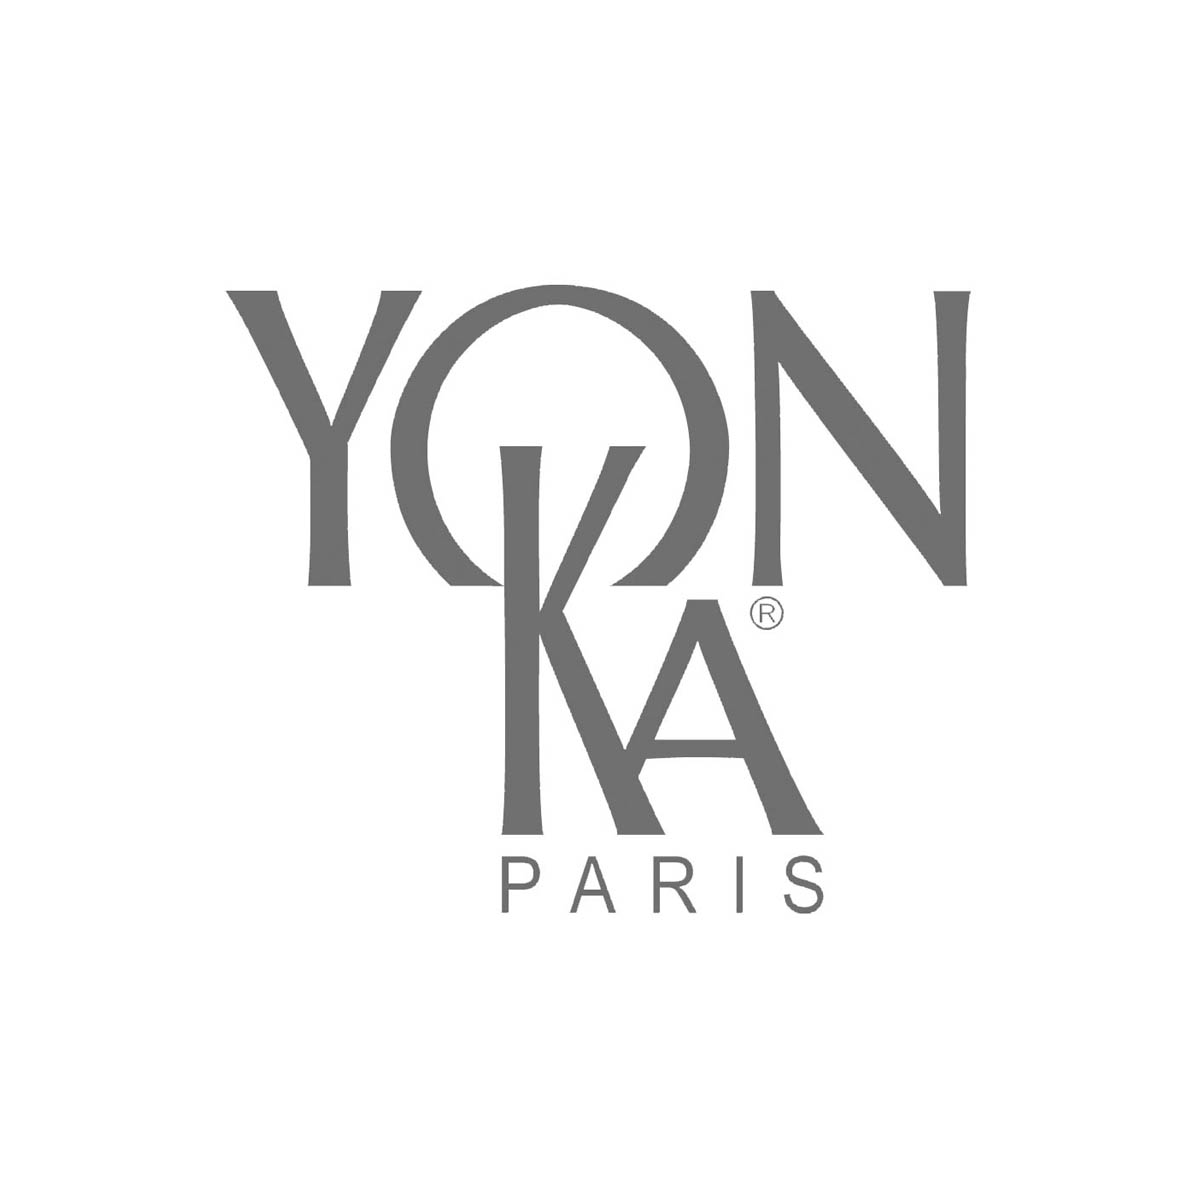 Yon-Ka Paris Skincare